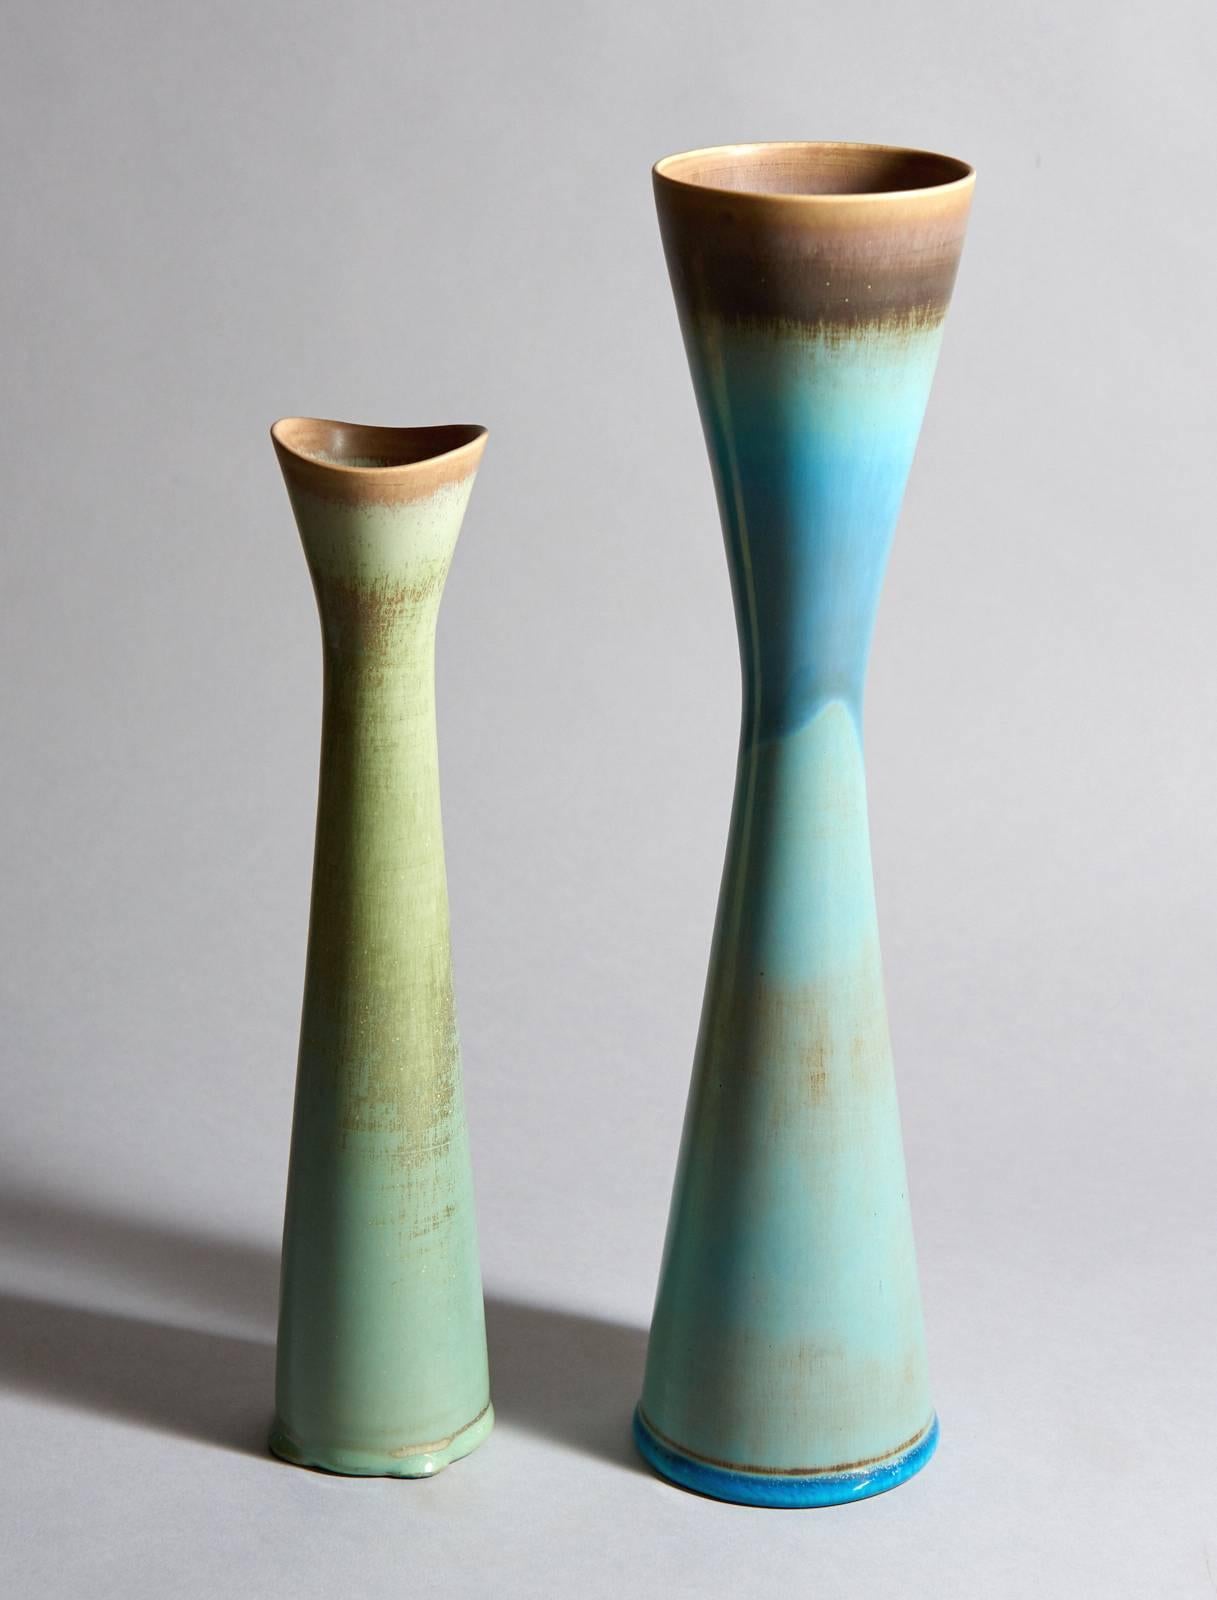 Six Studio Vases by Stig Lindberg (Schwedisch)